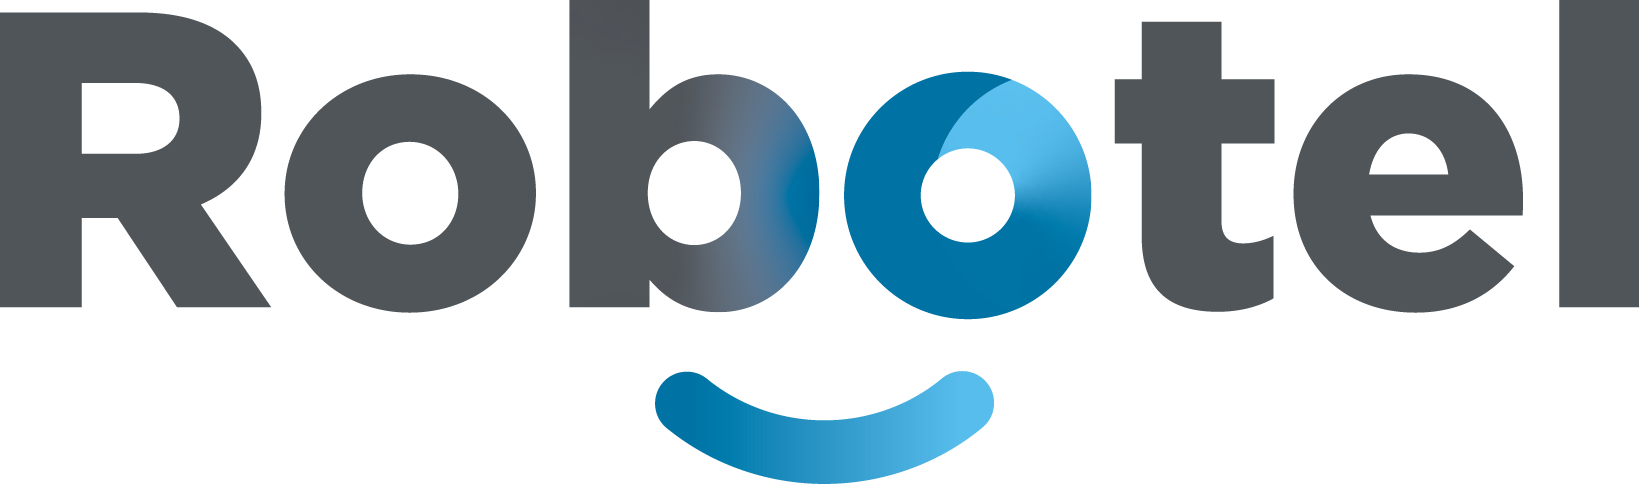 Logo Robotel - PNG